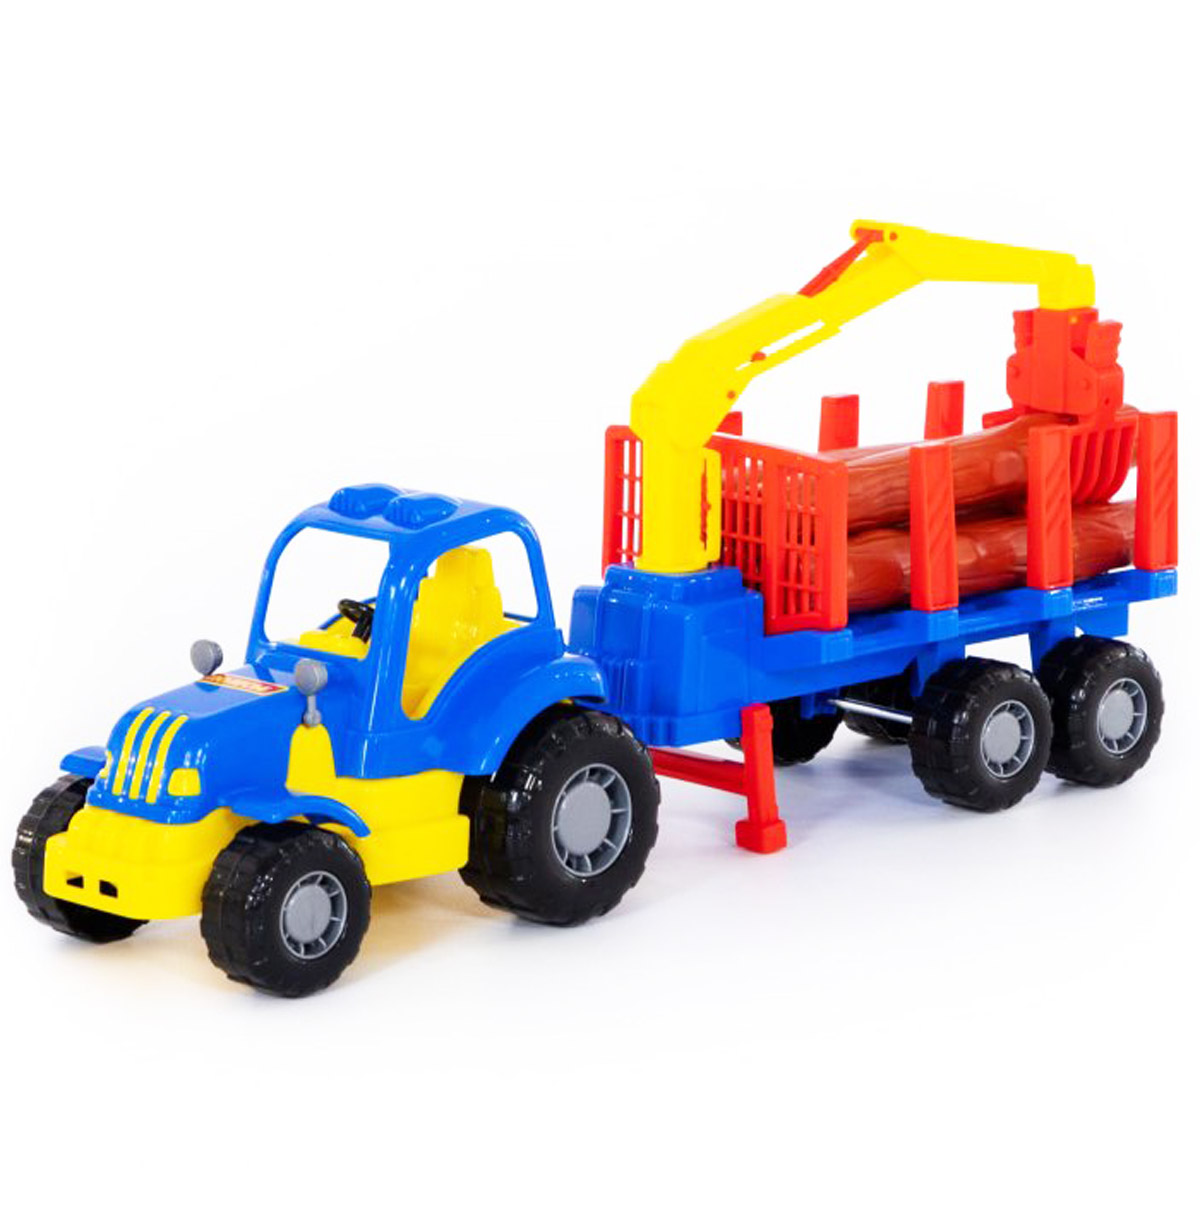 Іграшковий трактор 'Здоровань' з напівпричепом-лісовозом